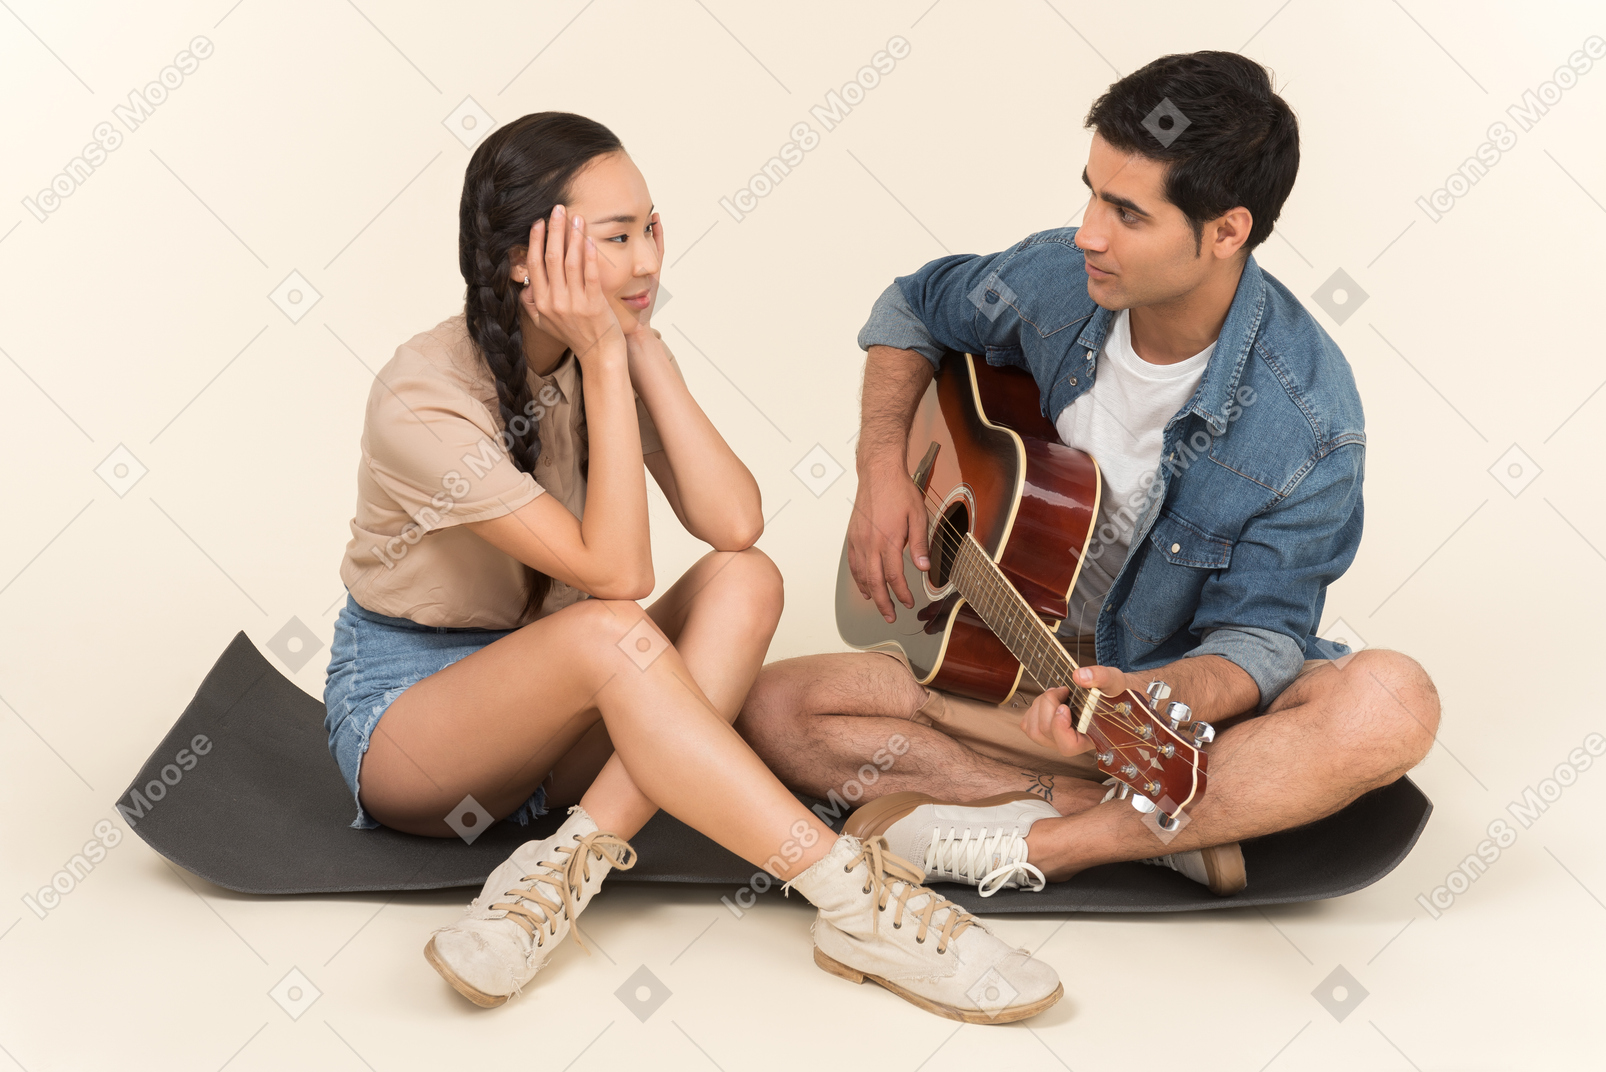 Young caucasian guy playing guitar sitting near asian woman on karimat